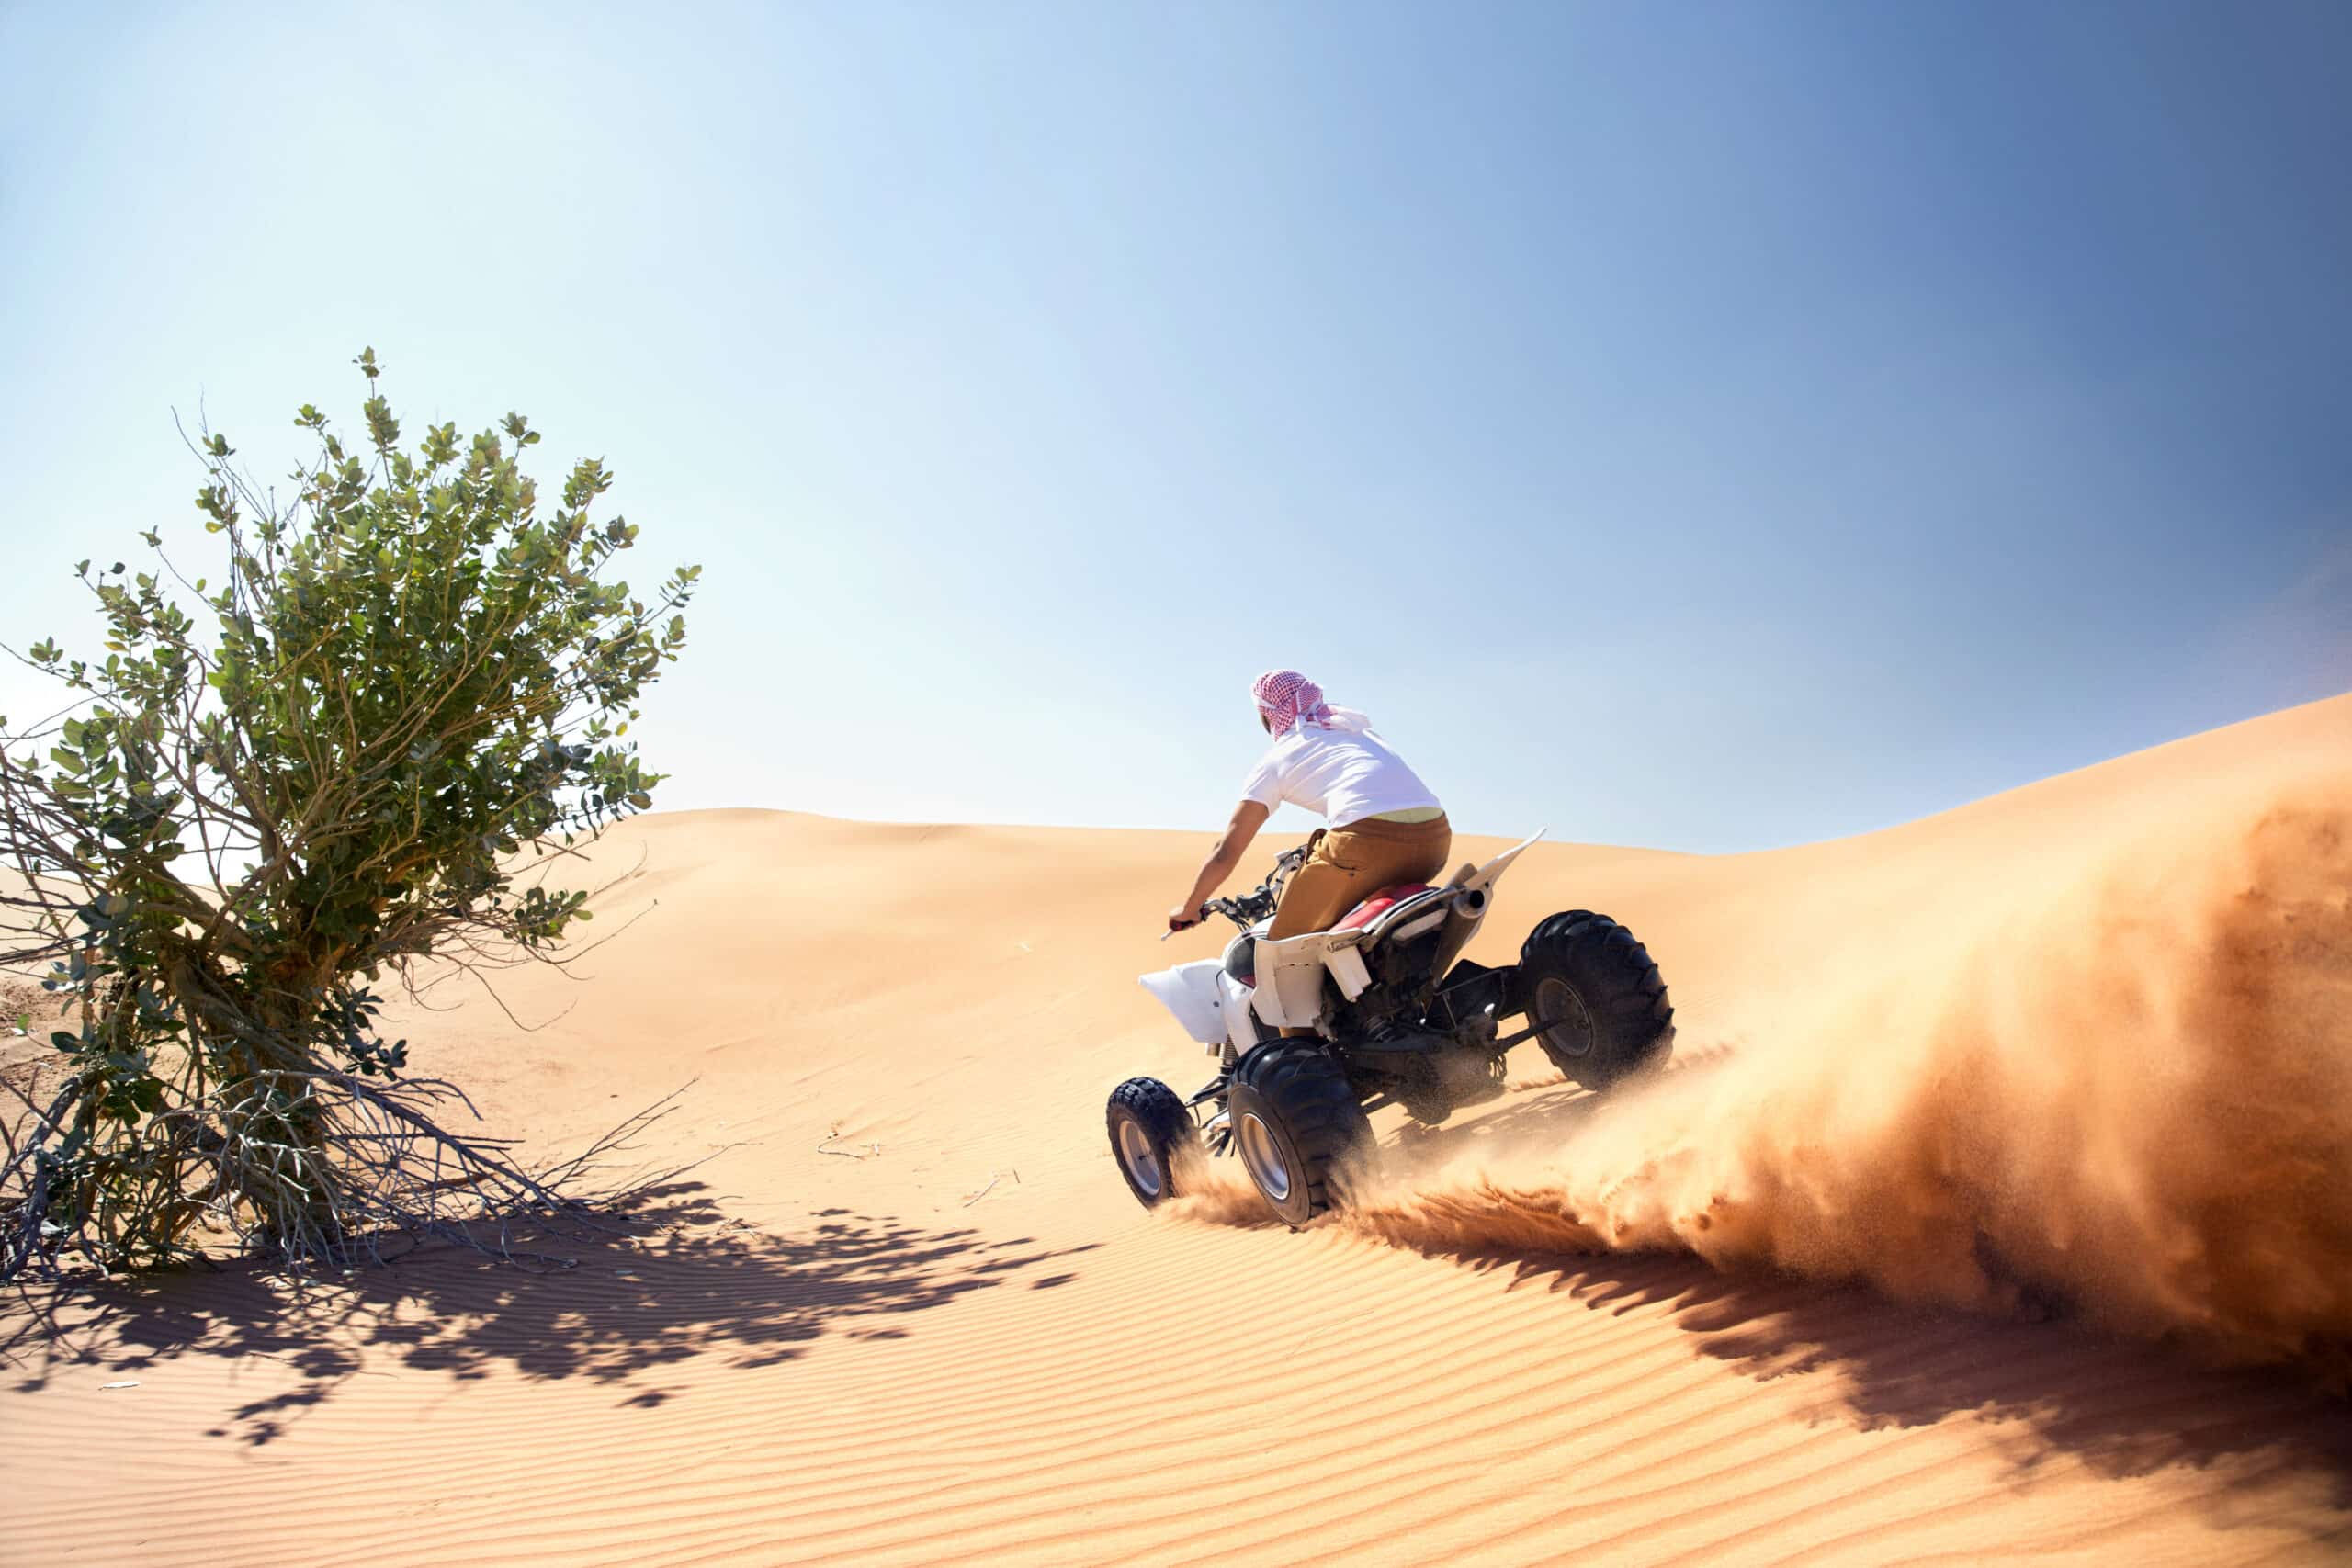 Eine Person in traditioneller Kleidung fährt auf einem Quad durch die Sanddünen der Wüste und wirbelt dabei eine Sandspur auf. Links ist unter einem klaren blauen Himmel ein grüner Busch zu sehen. © Fotografie Tomas Rodriguez